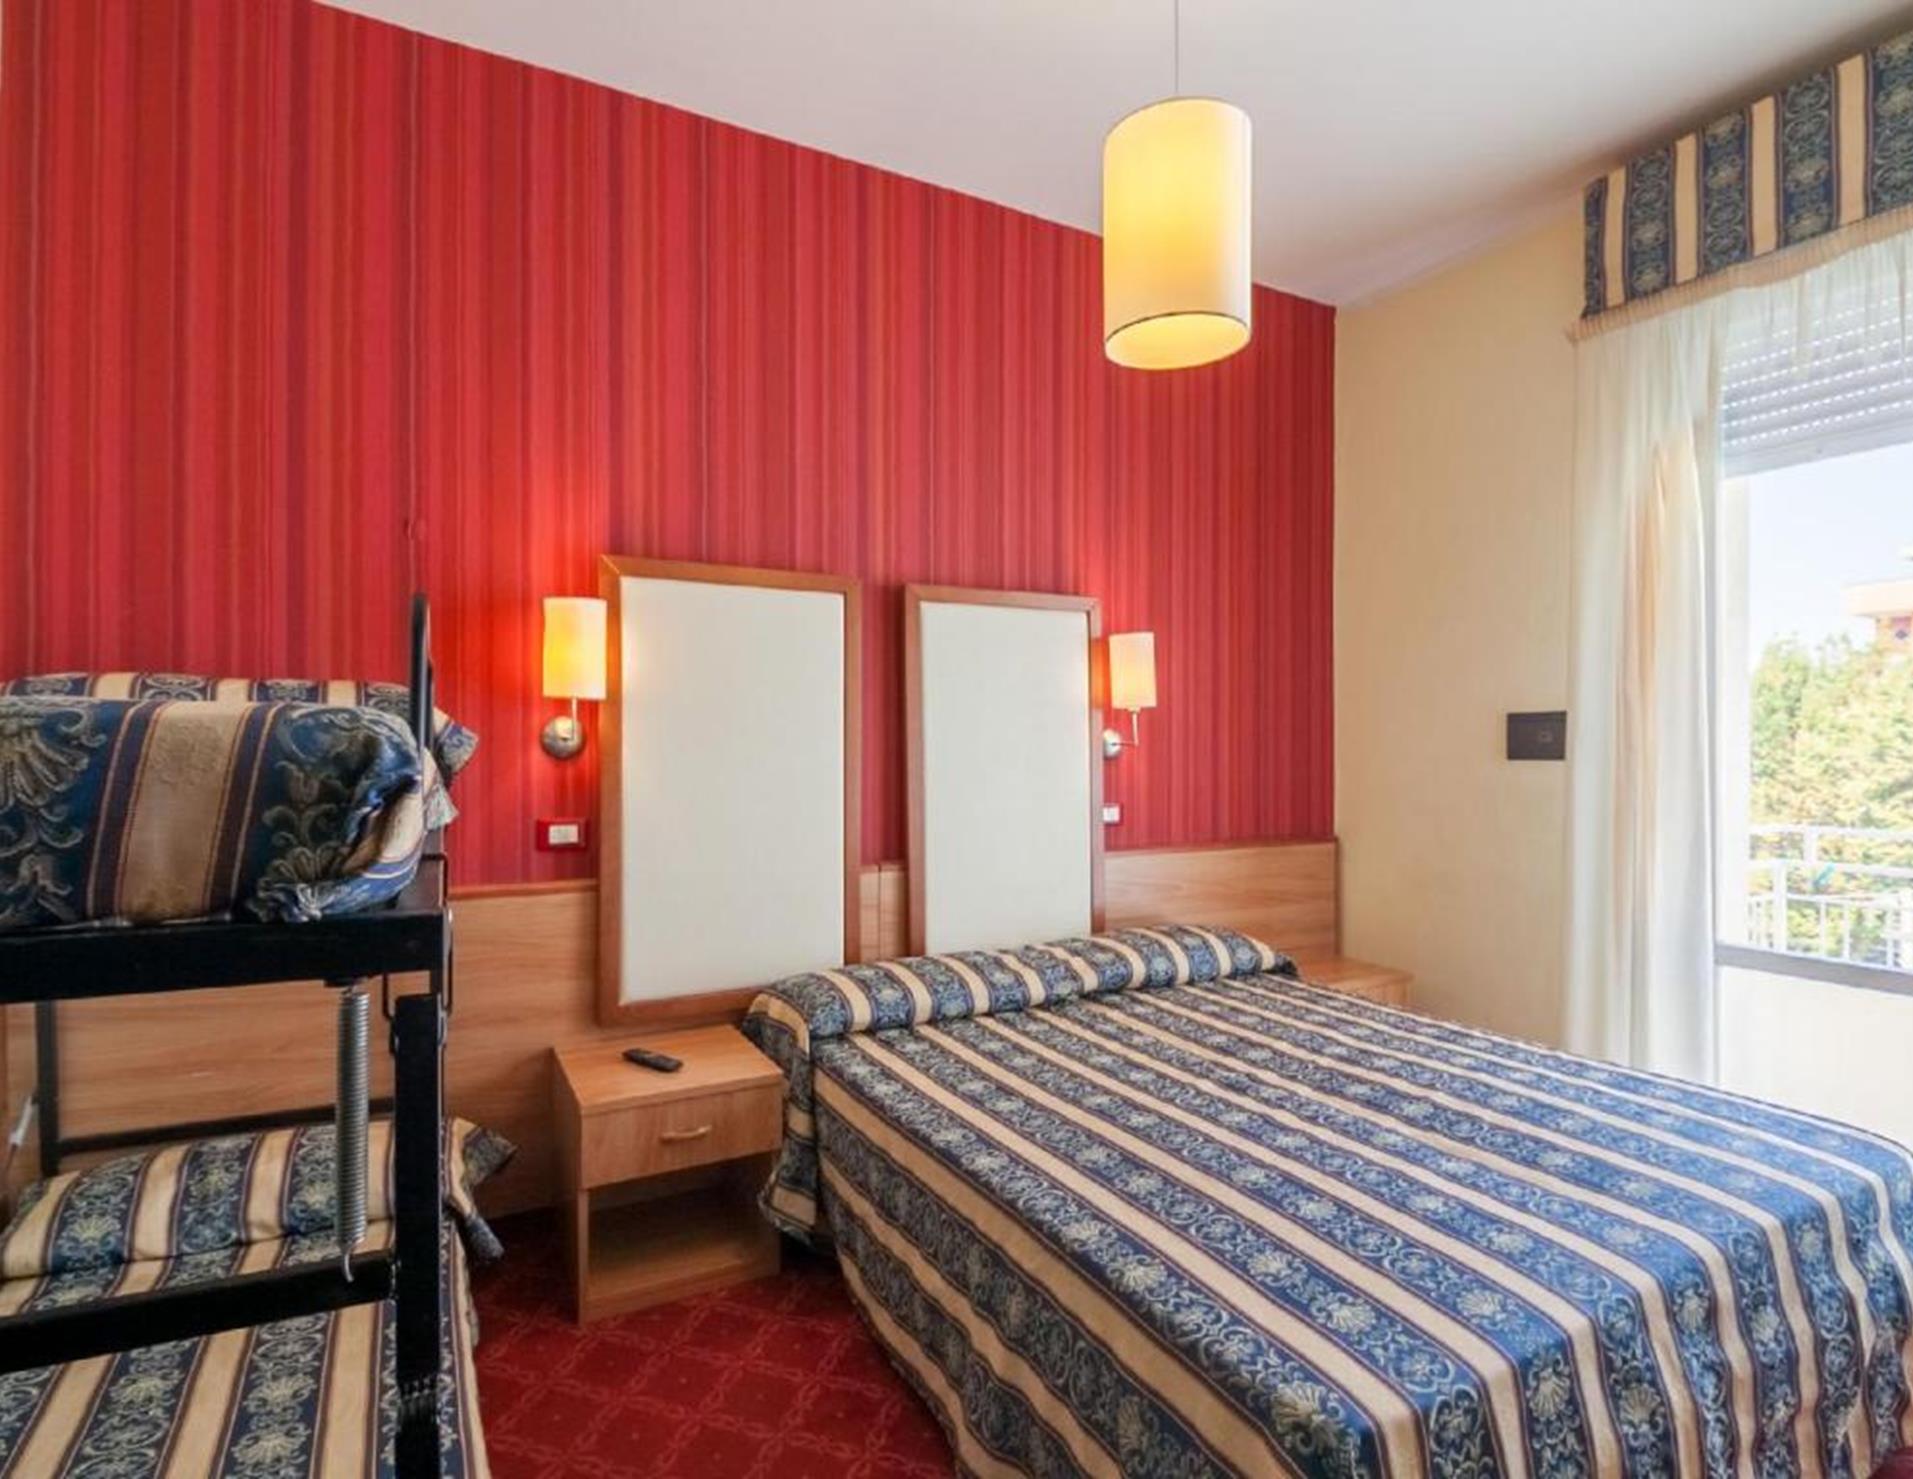 Hotel Promenade Universale - Room 6